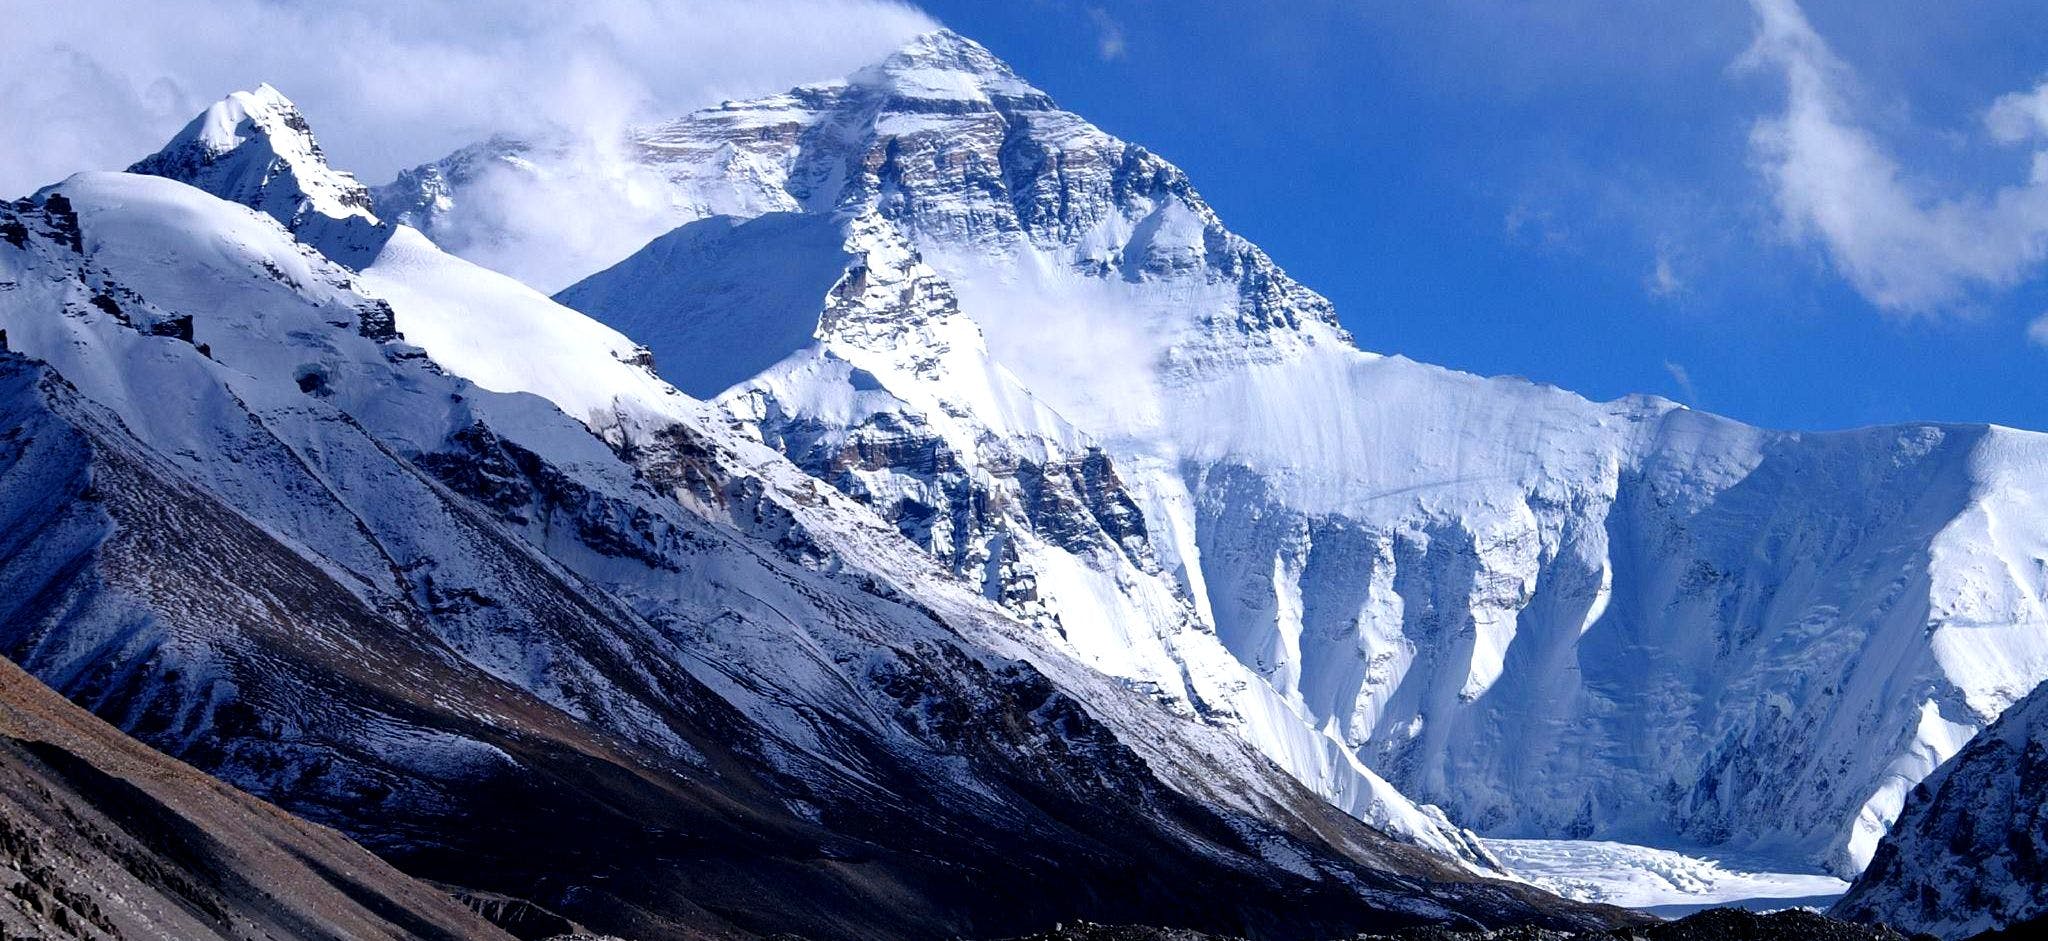 Easiest 8,000 Meter Peak to Climb in Nepal